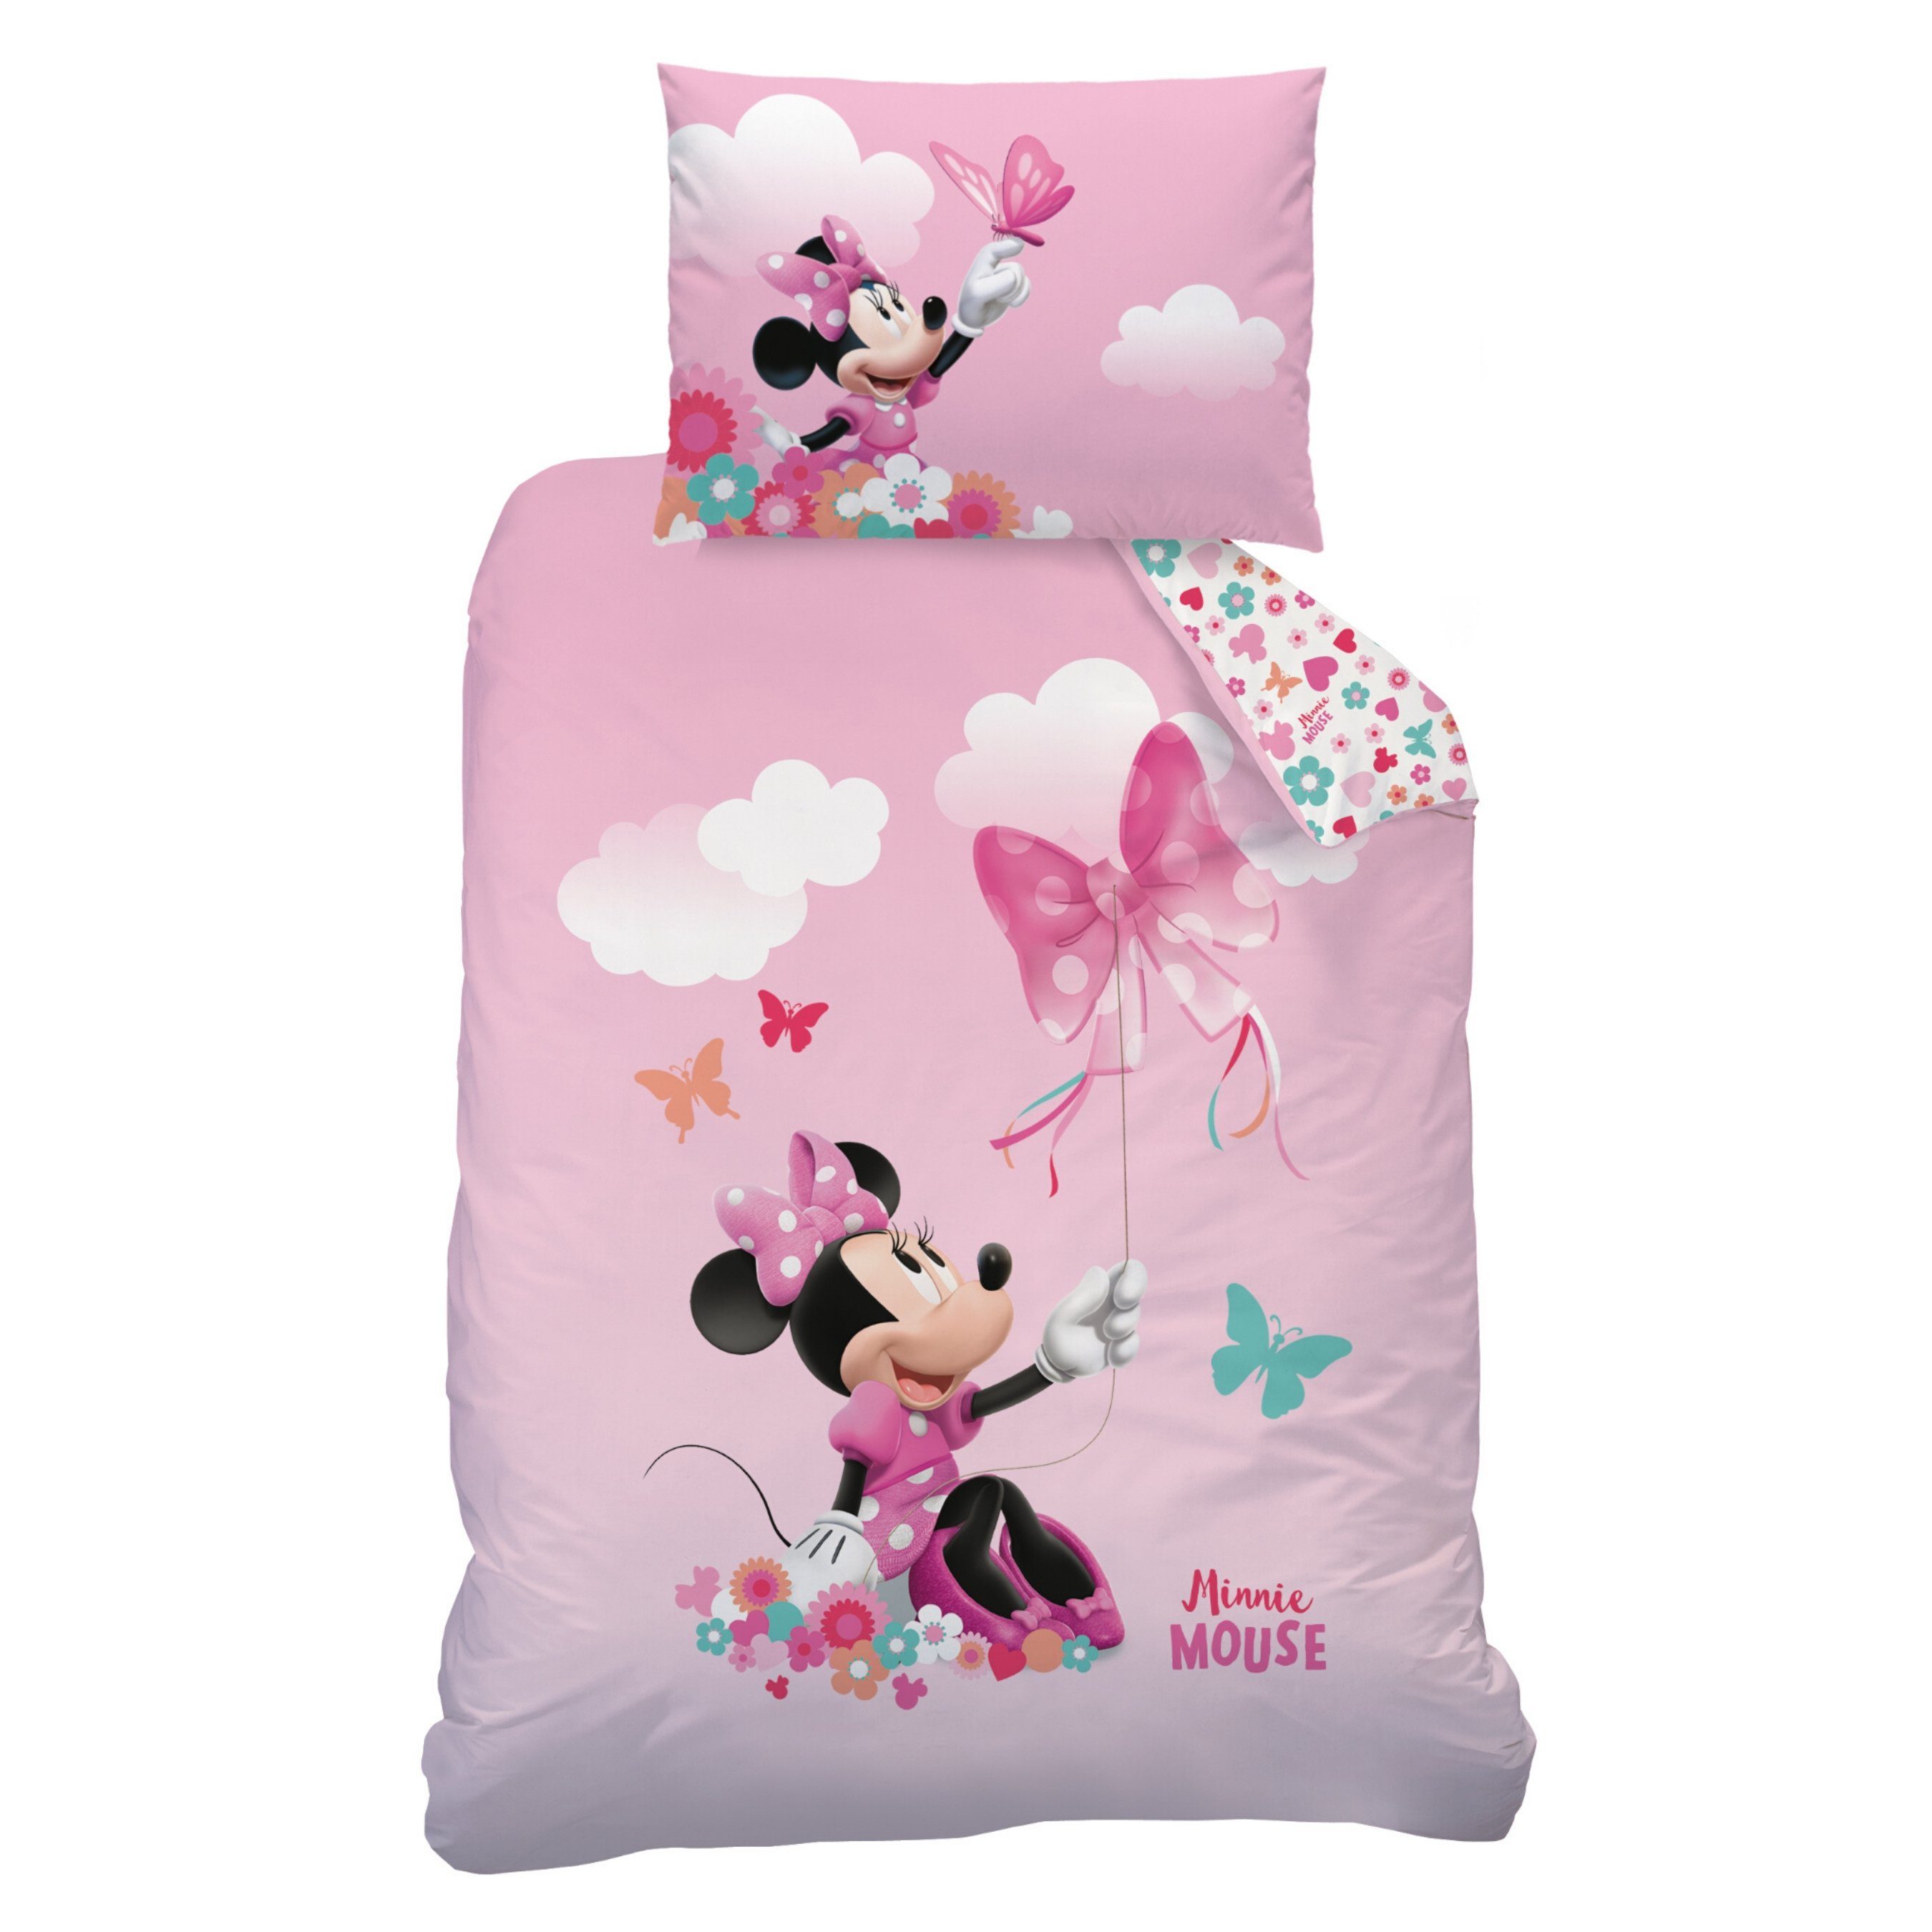 Minnie Maus Baby Bettwäsche Bettbezug Bettgarnitur Kissenbezug 100x135cm Rosa 